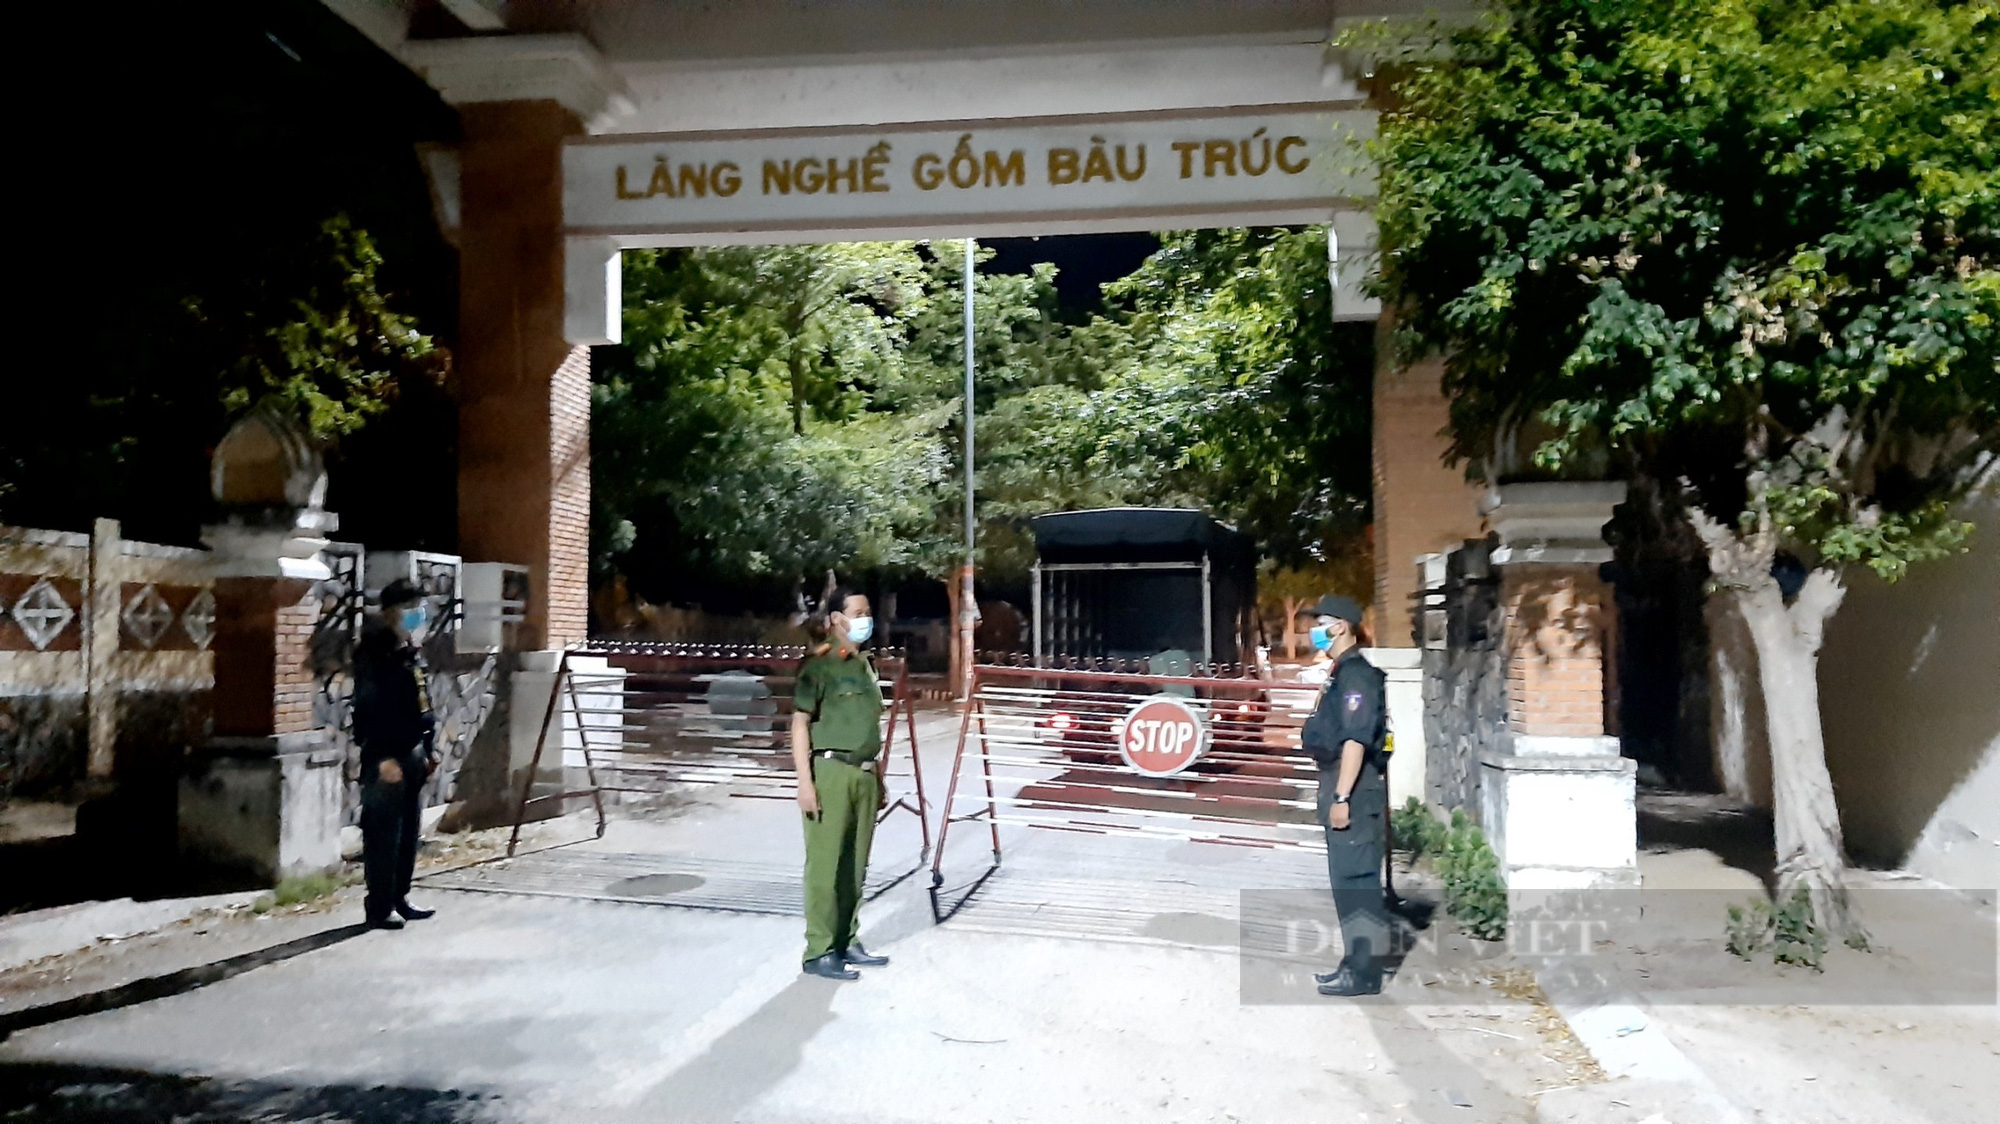 Ninh Thuận: Phong tỏa 1032 hộ ở làng gốm Bàu Trúc vì Covid-19 - Ảnh 1.